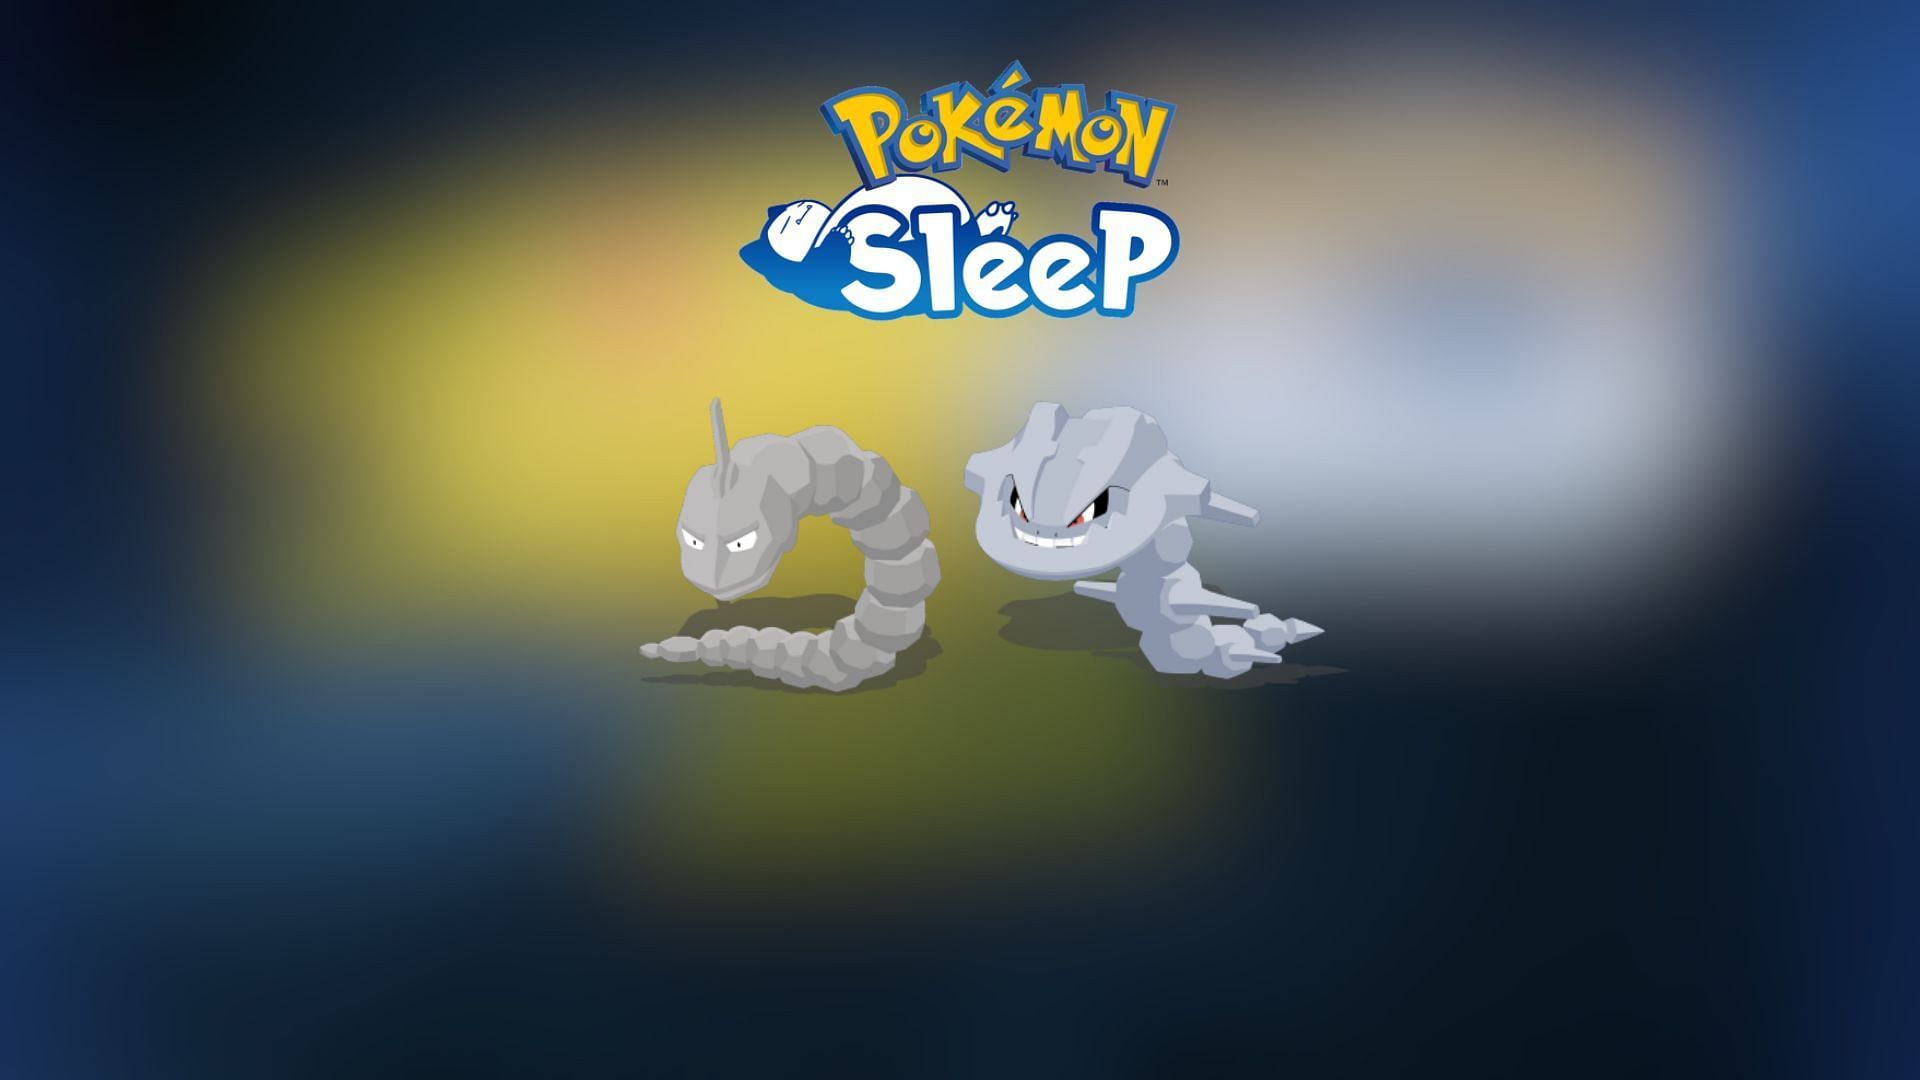 Onix - Sleep Style Dex - Pokémon Sleep